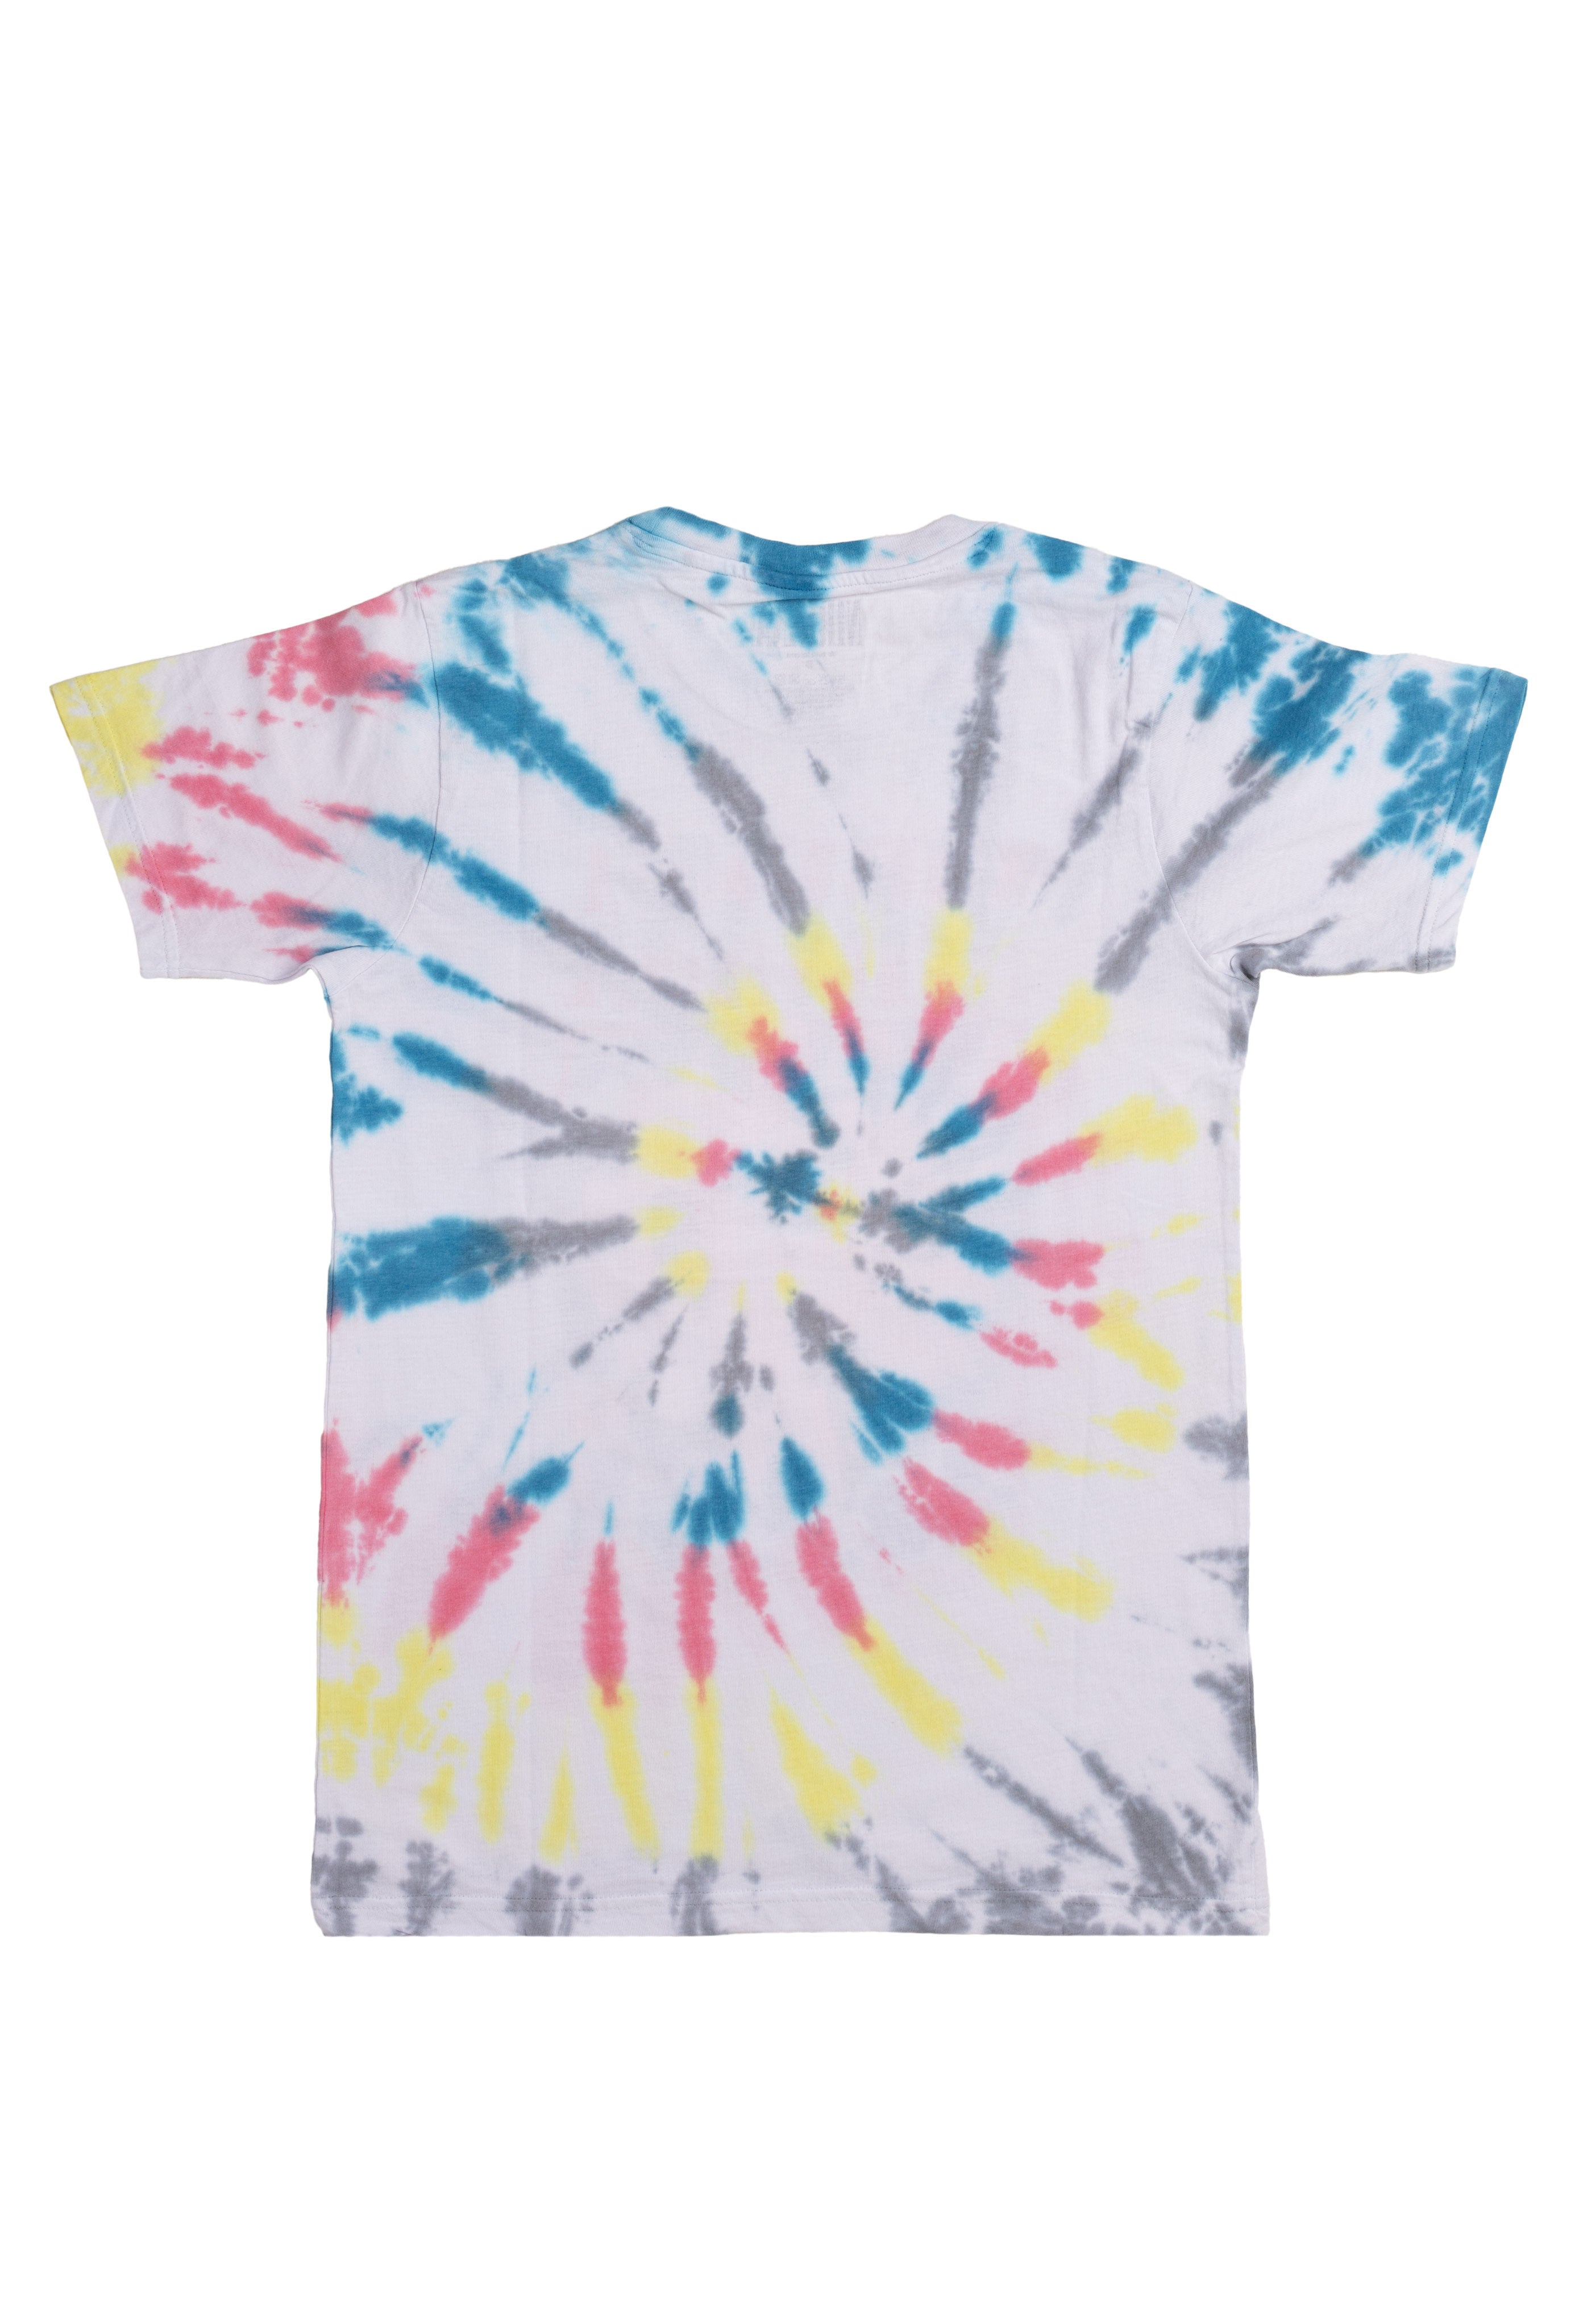 Nirvana - Heart Dye Wash - T-Shirt